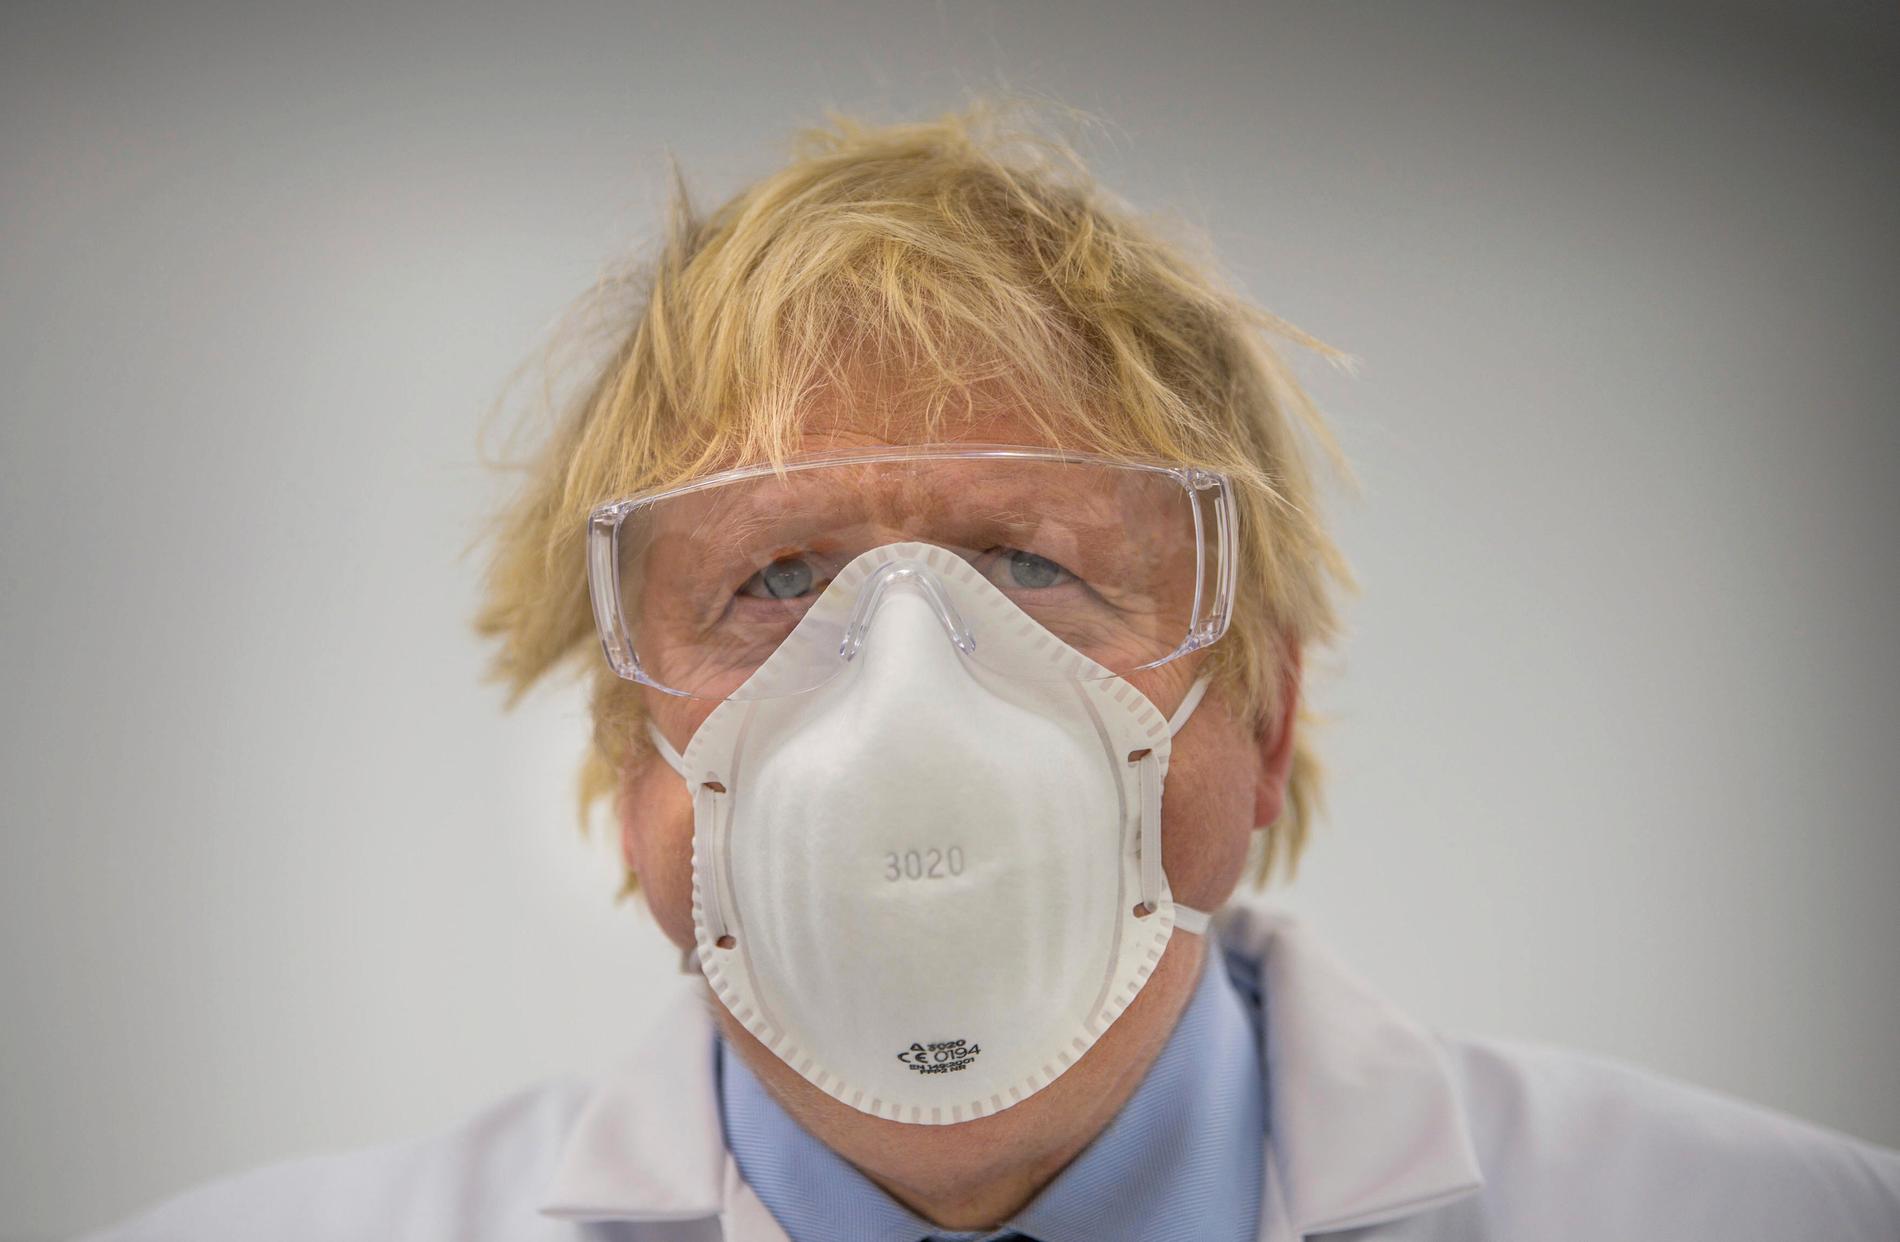 Storbritannien var bland de värst drabbade under pandemins första fas. Nu sköljer en fjärde våg av covid-19 över landet – vilket har väckt oro inför det stora klimatmötet i Glasgow. På bilden syns premiärminister Boris Johnson med munskydd i samband med ett besök på ett laboratorium tidigare i år.